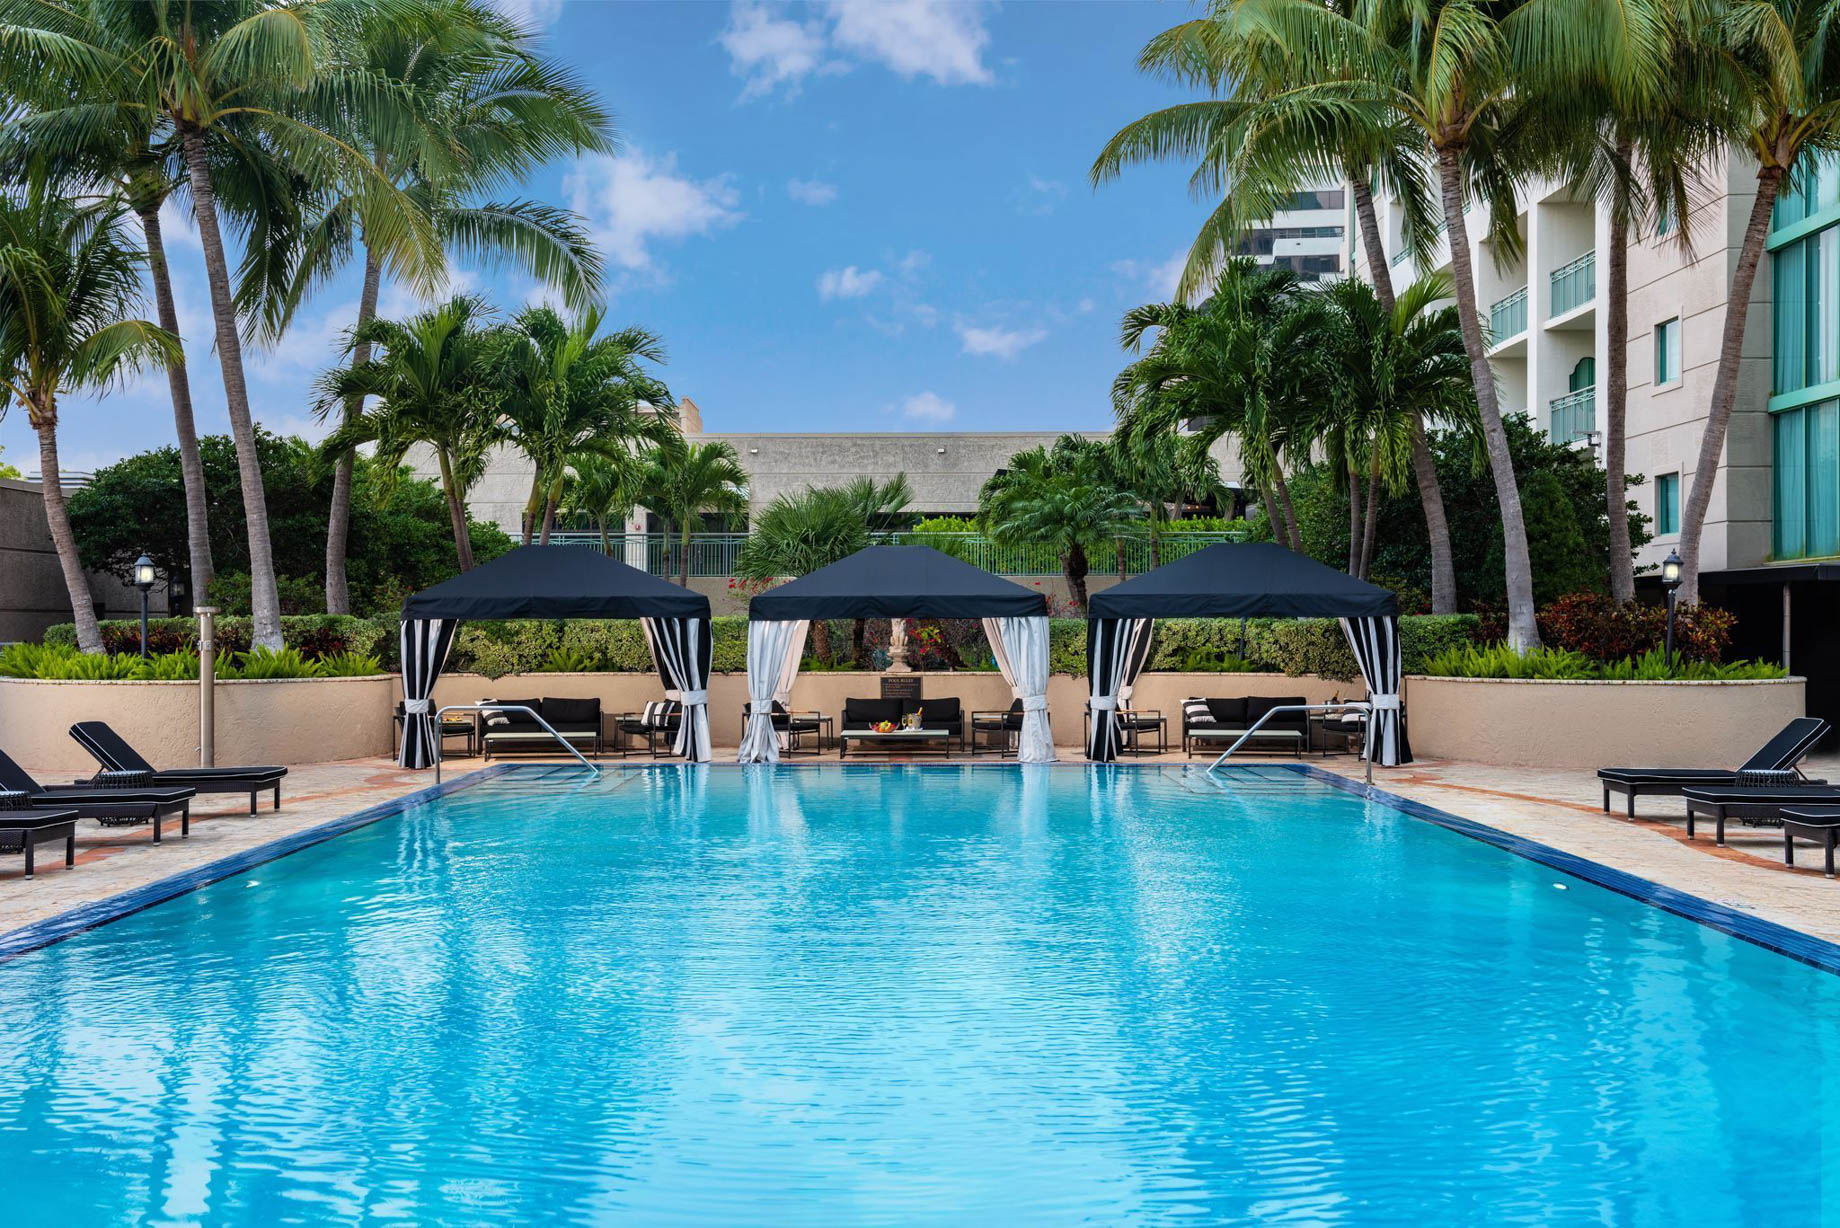 The Ritz-Carlton Coconut Grove, Miami Hotel - Miami, FL, USA - Exterior Pool Deck